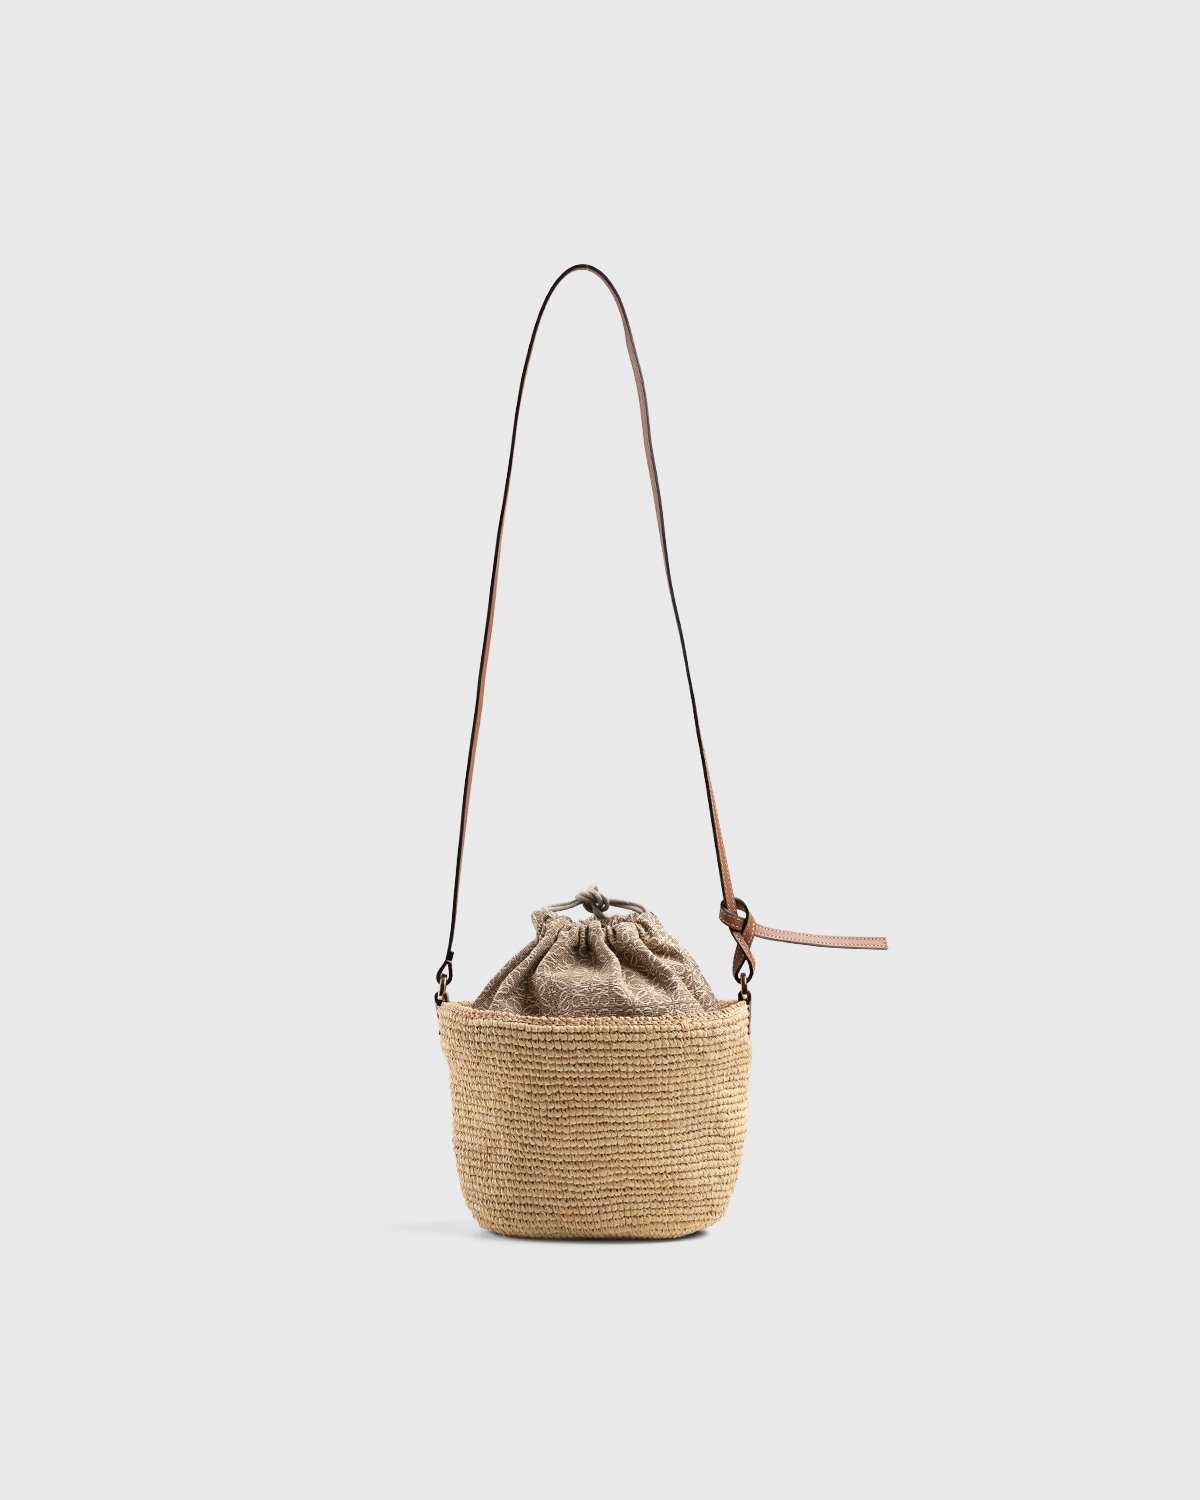 LOEWE - This Pochette bag from the Paula's Ibiza 2020